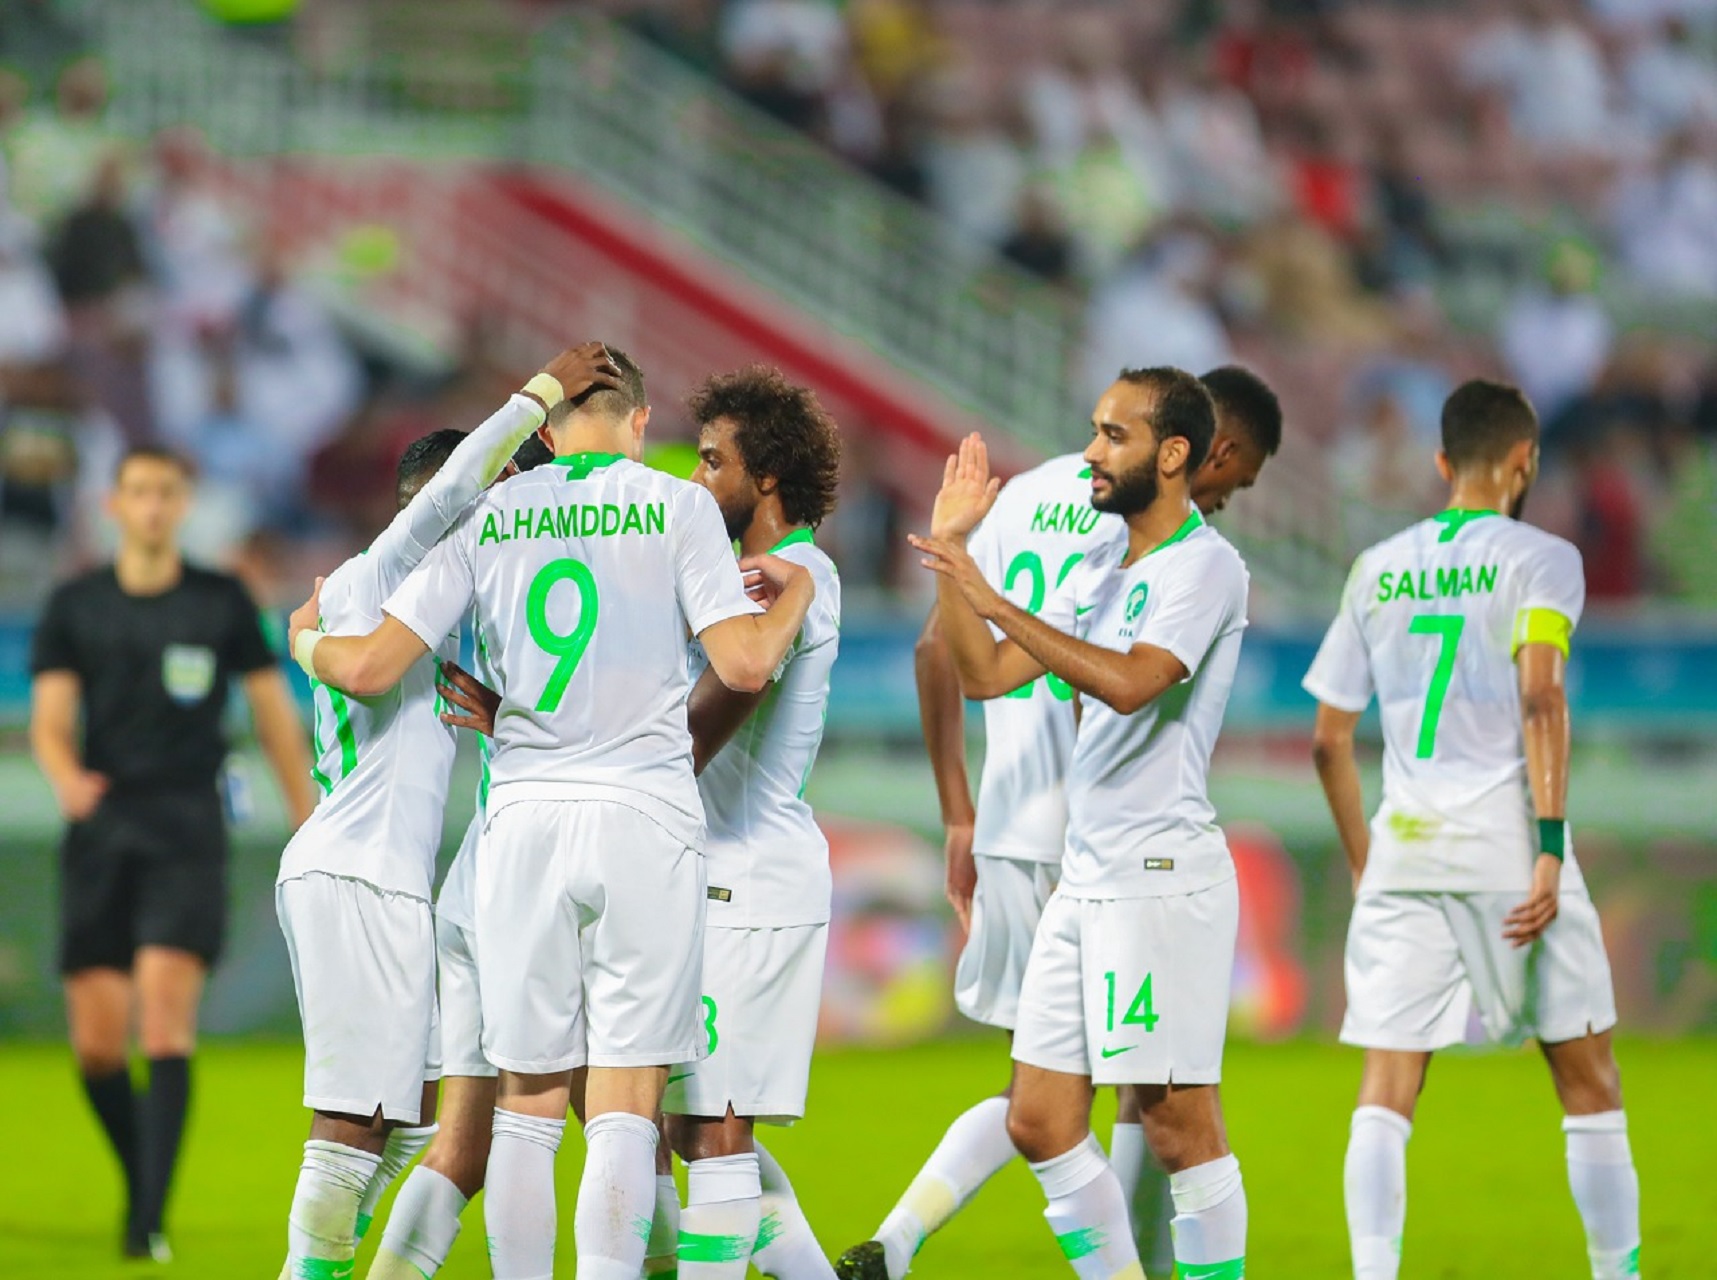 رينارد يدفع بالقوة الضاربة في مباراة #السعودية و #البحرين